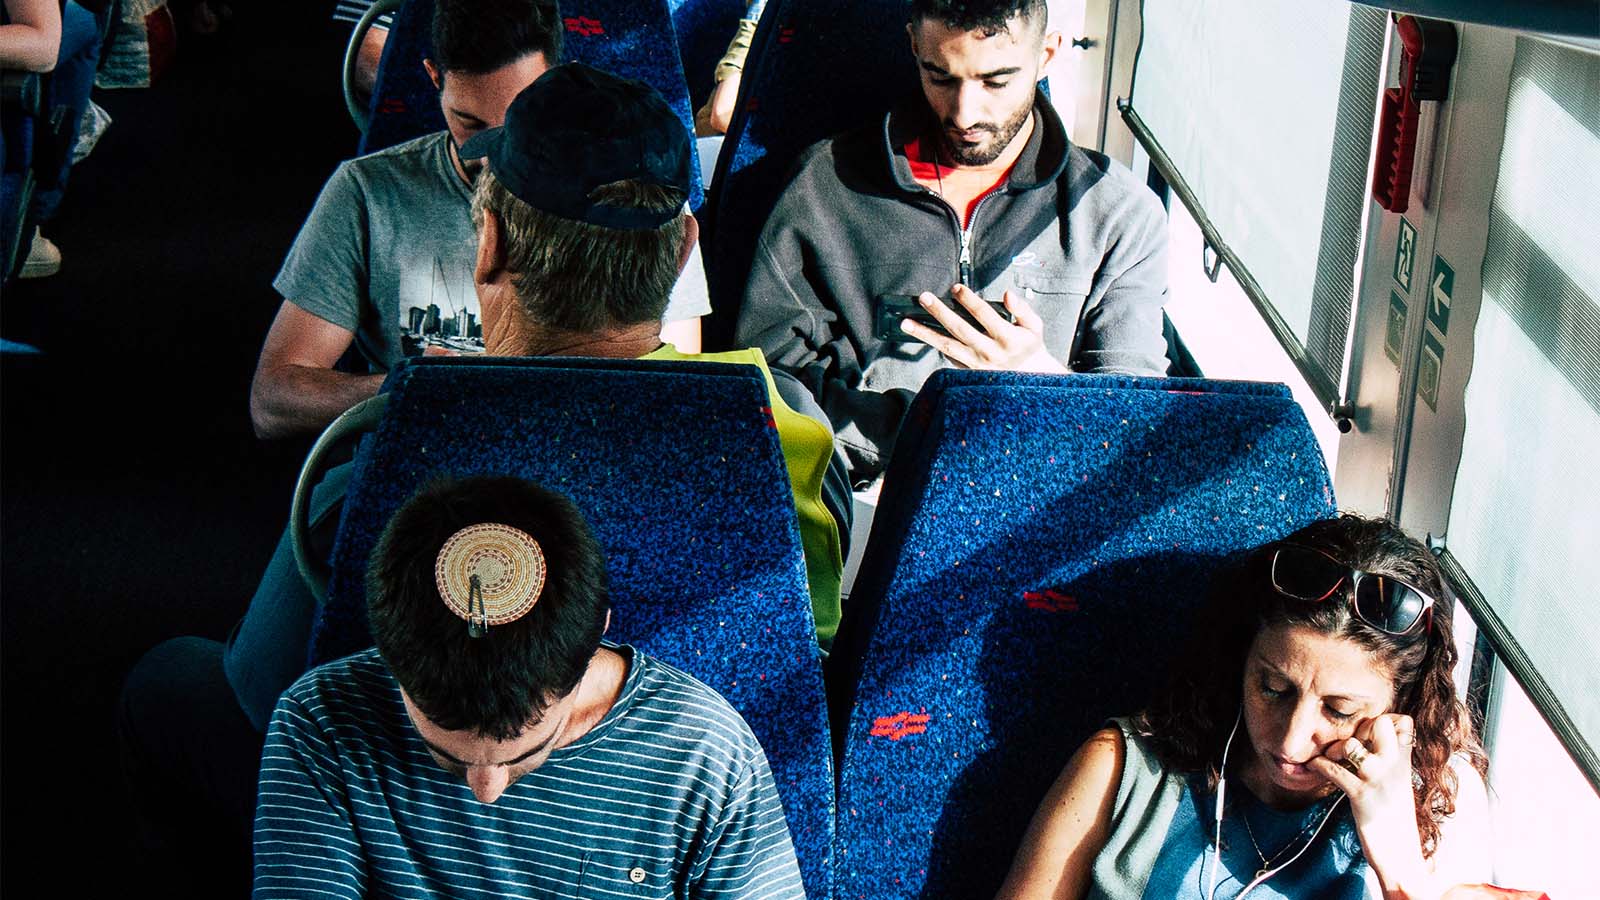 נוסעים ברכבת ישראל בטלפונים. ארכיון, למצולמים אין קשר לכתבה (צילום: Jose HERNANDEZ Camera 51 / Shutterstock.com)